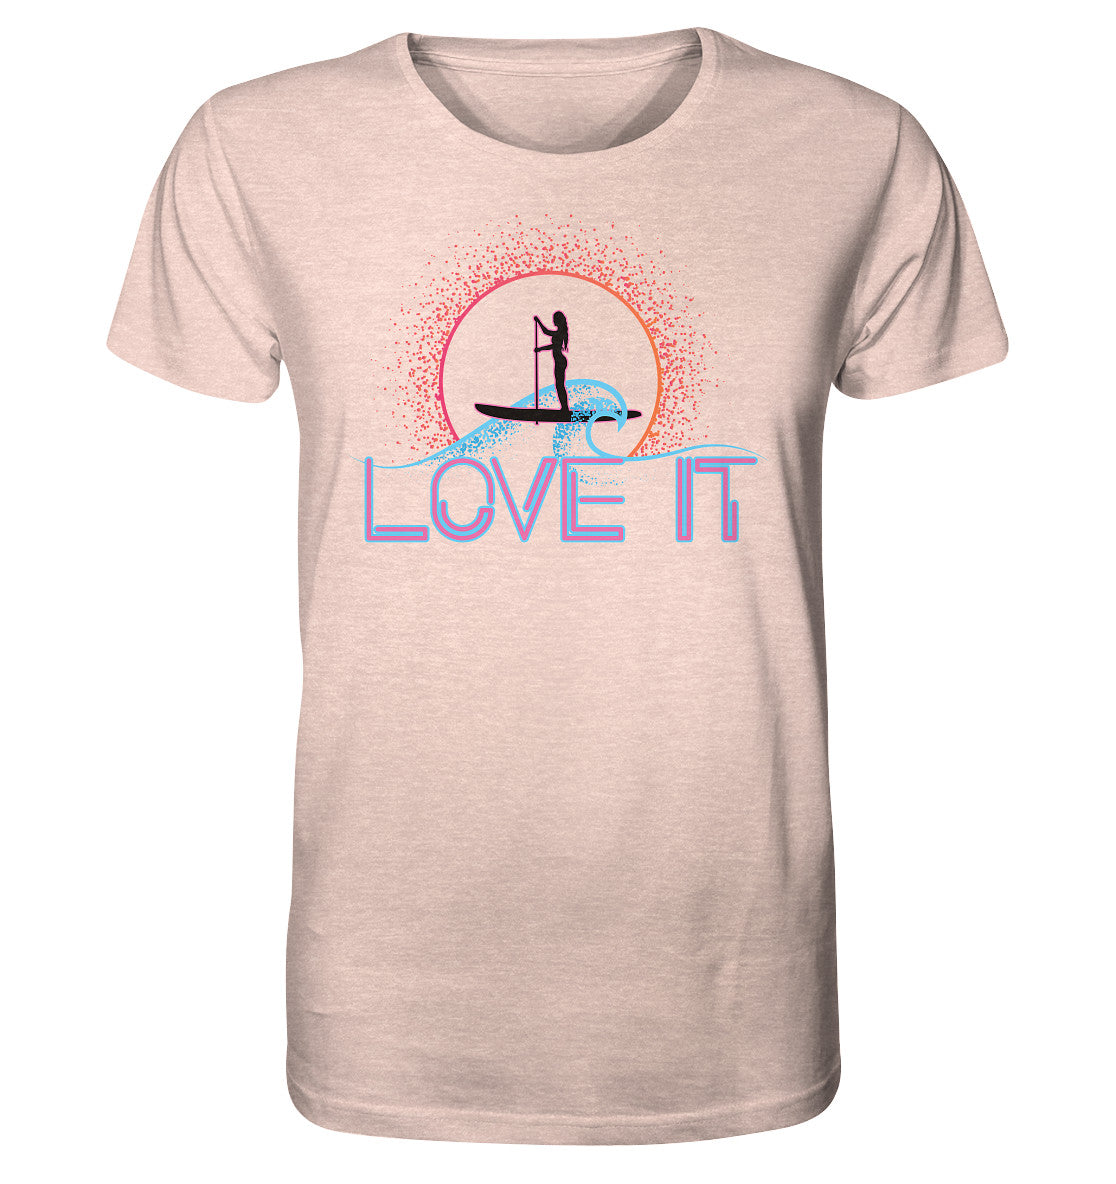 SUP- Love It - Organic Shirt (meliert)